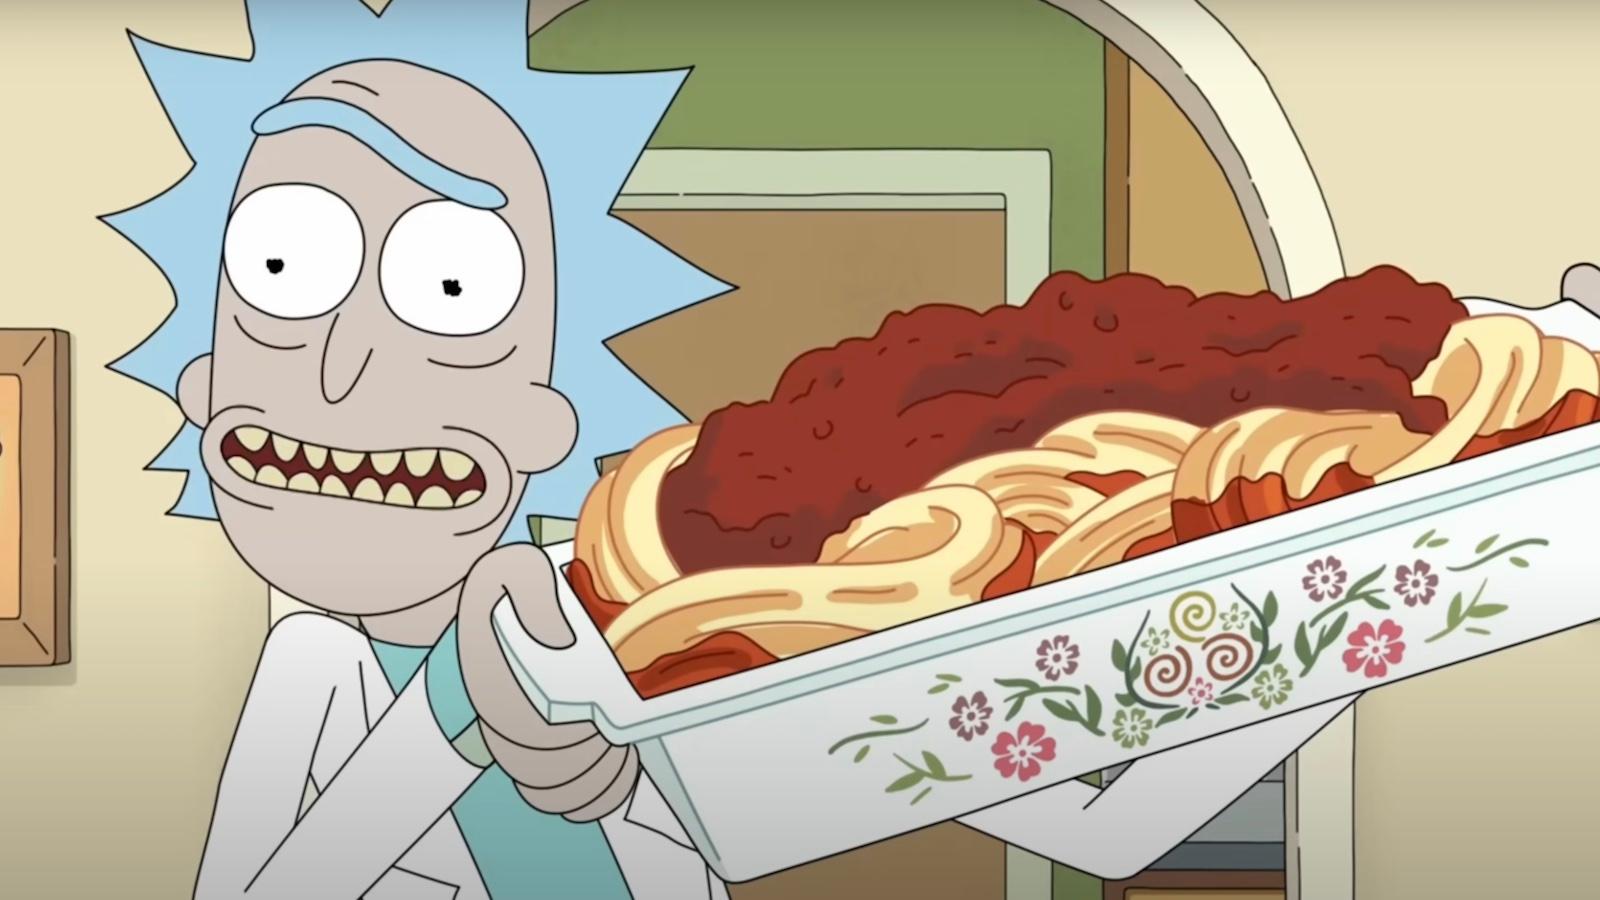 Les spaghetti de Rick dans Rick et Morty Episode 4, Saison 7